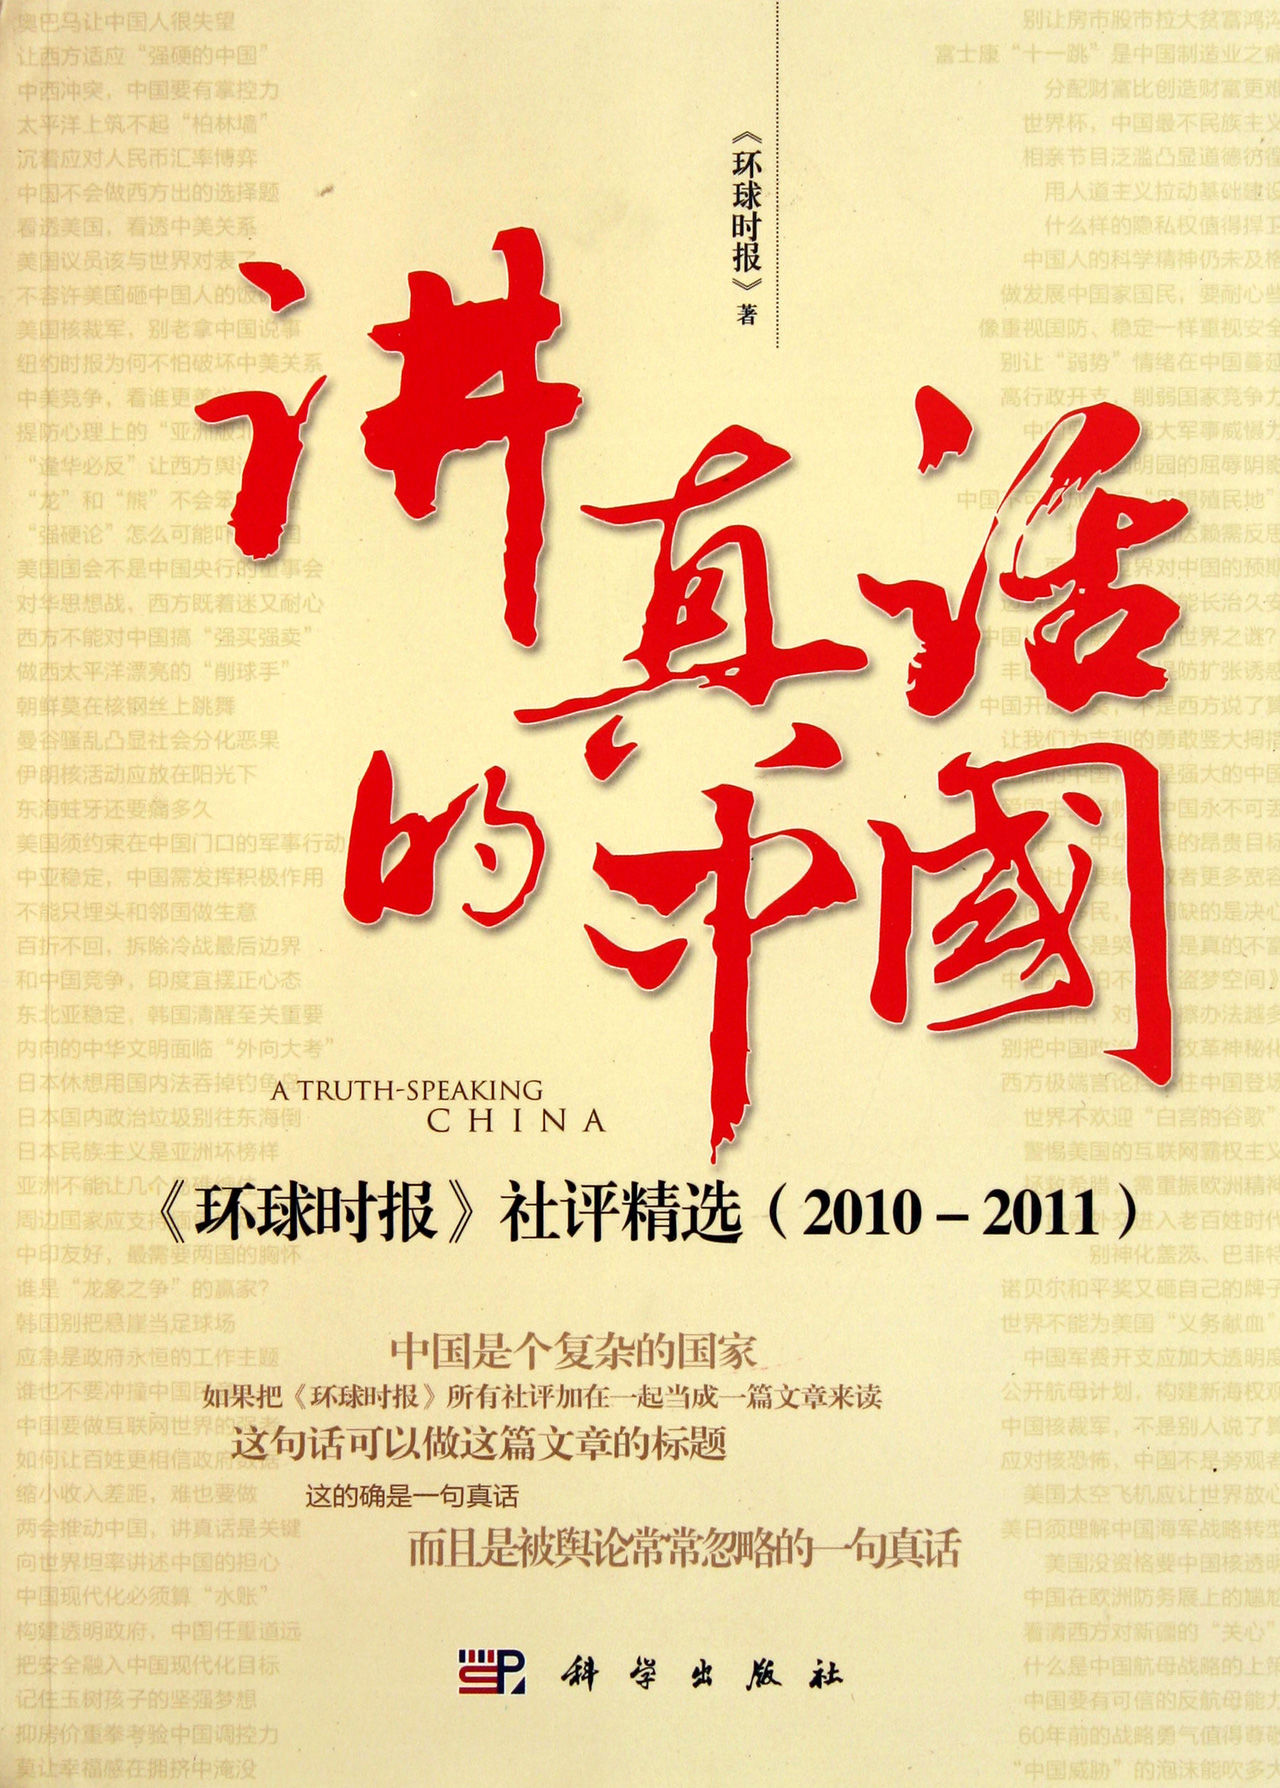 《講真話的中國》——《環球時報》社評精選(2010-2011)(講真話的中國：《環球時報》社評精選)